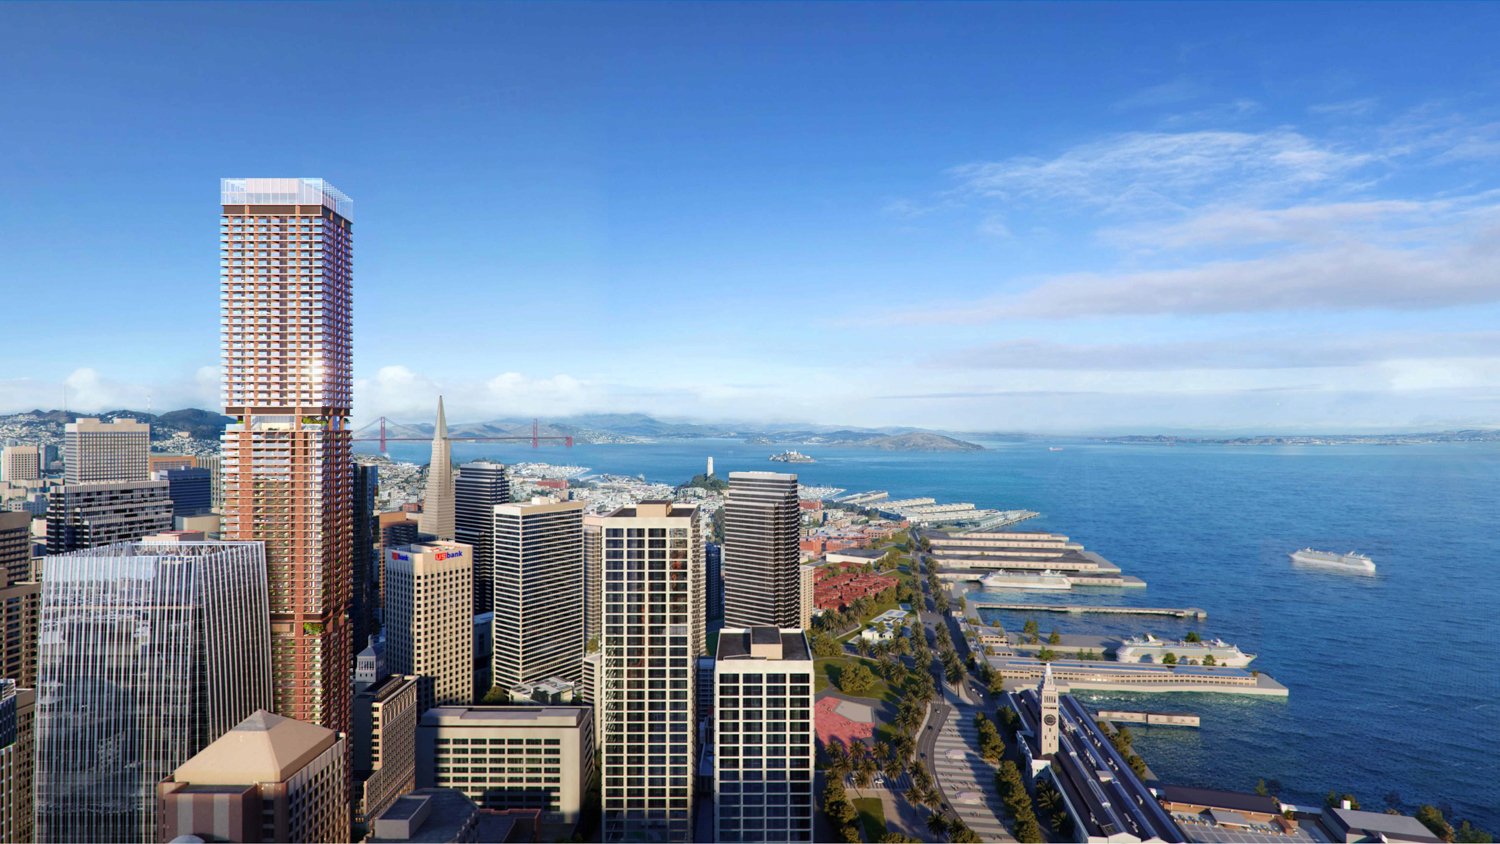 A skyscraper is seen in a rendering.